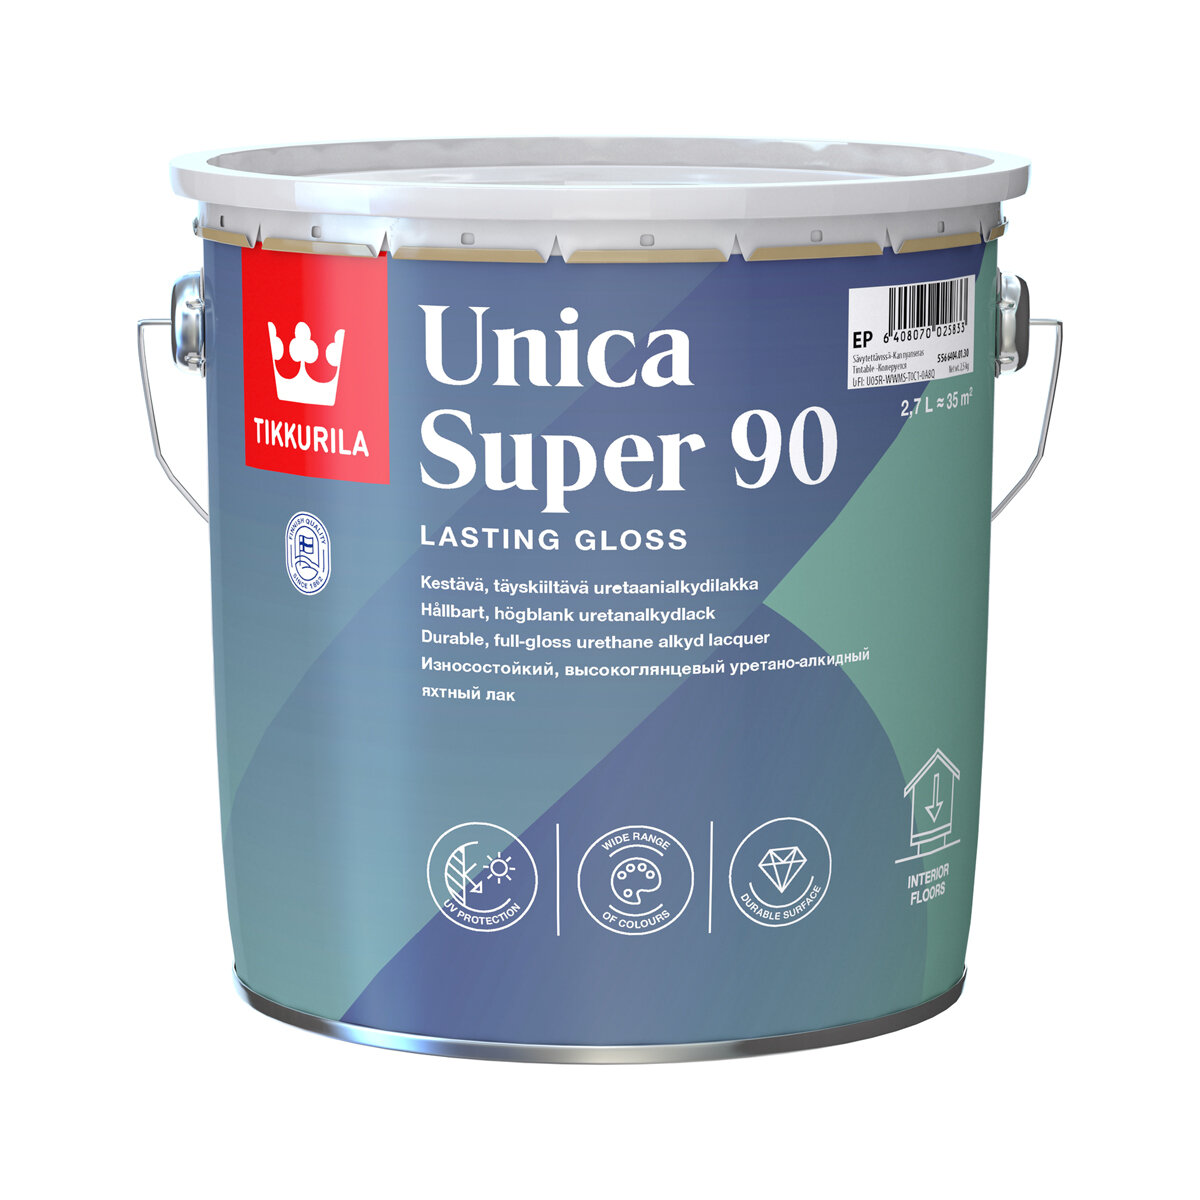 TIKKURILA UNICA SUPER 90 лак алкидно уретановый универсальный износостойкий, высокоглянцевый (2,7л)